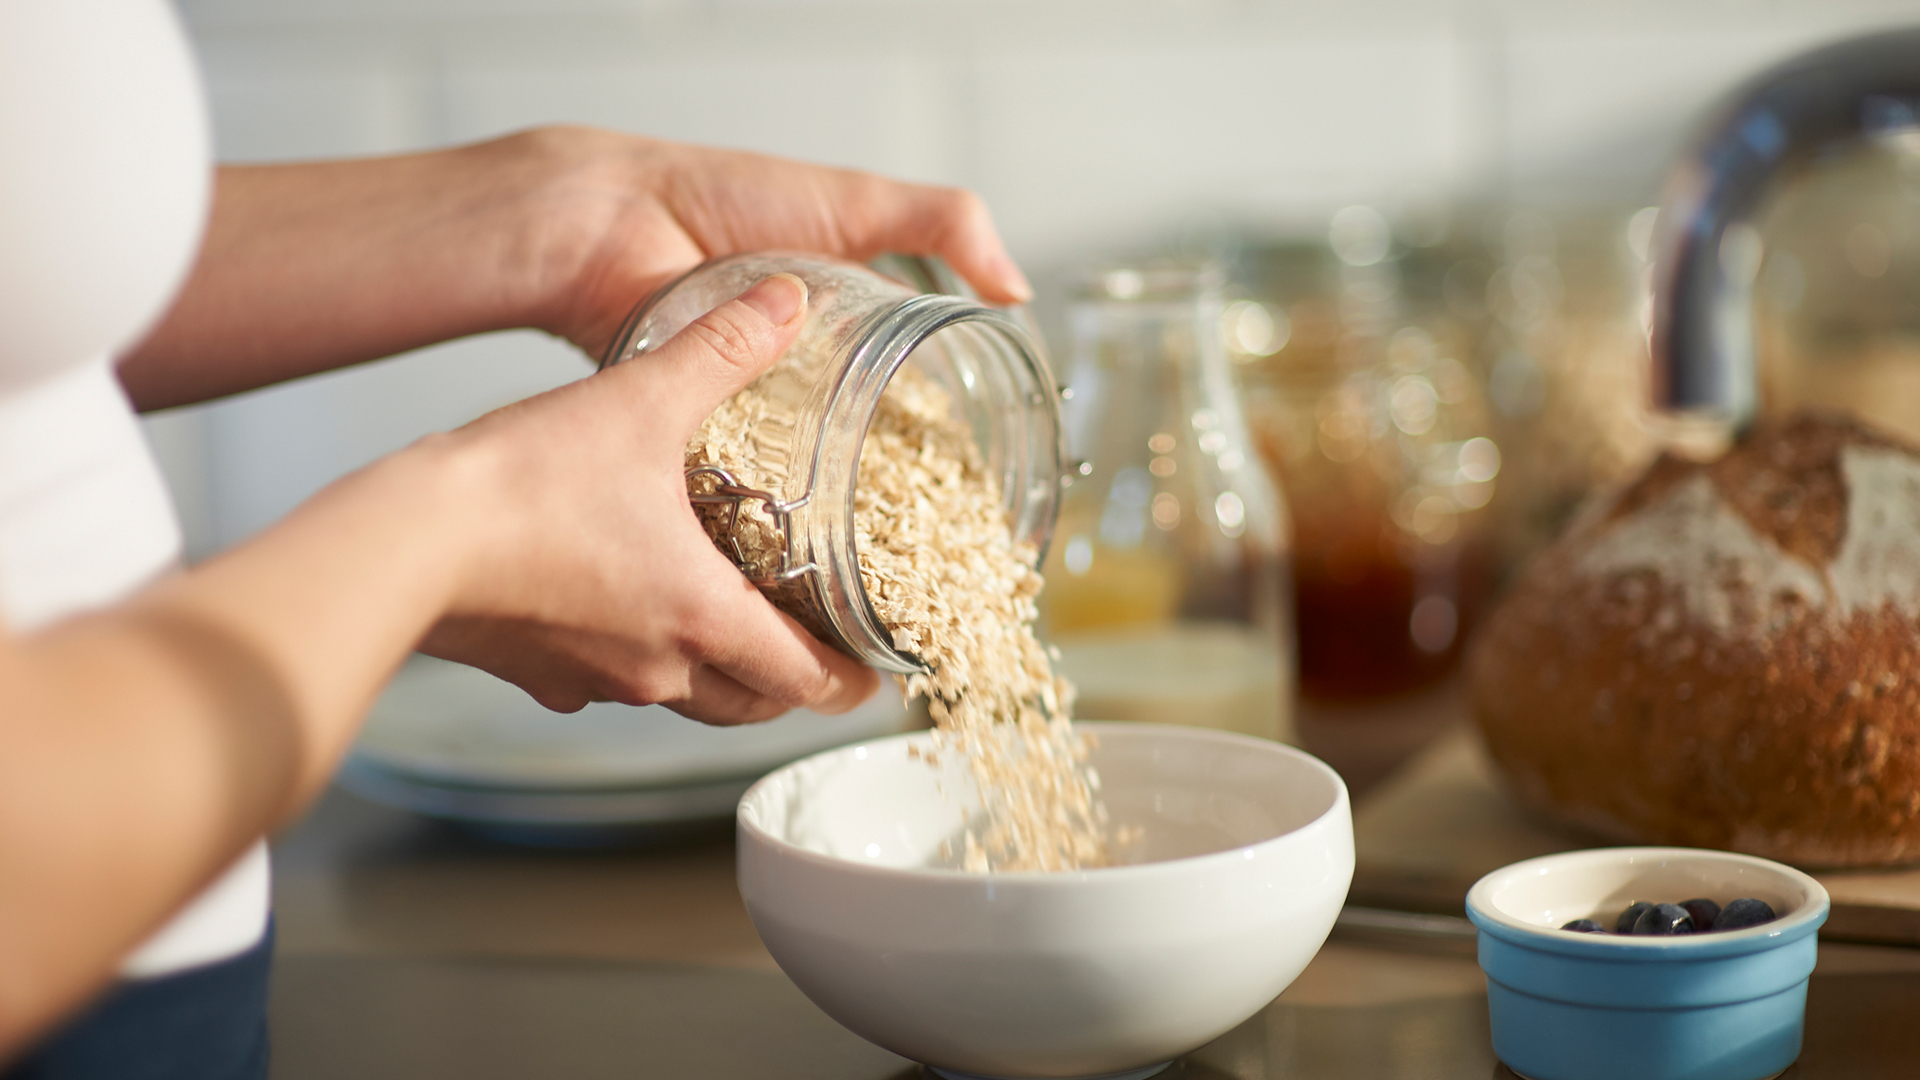 oats are a good prebiotic food